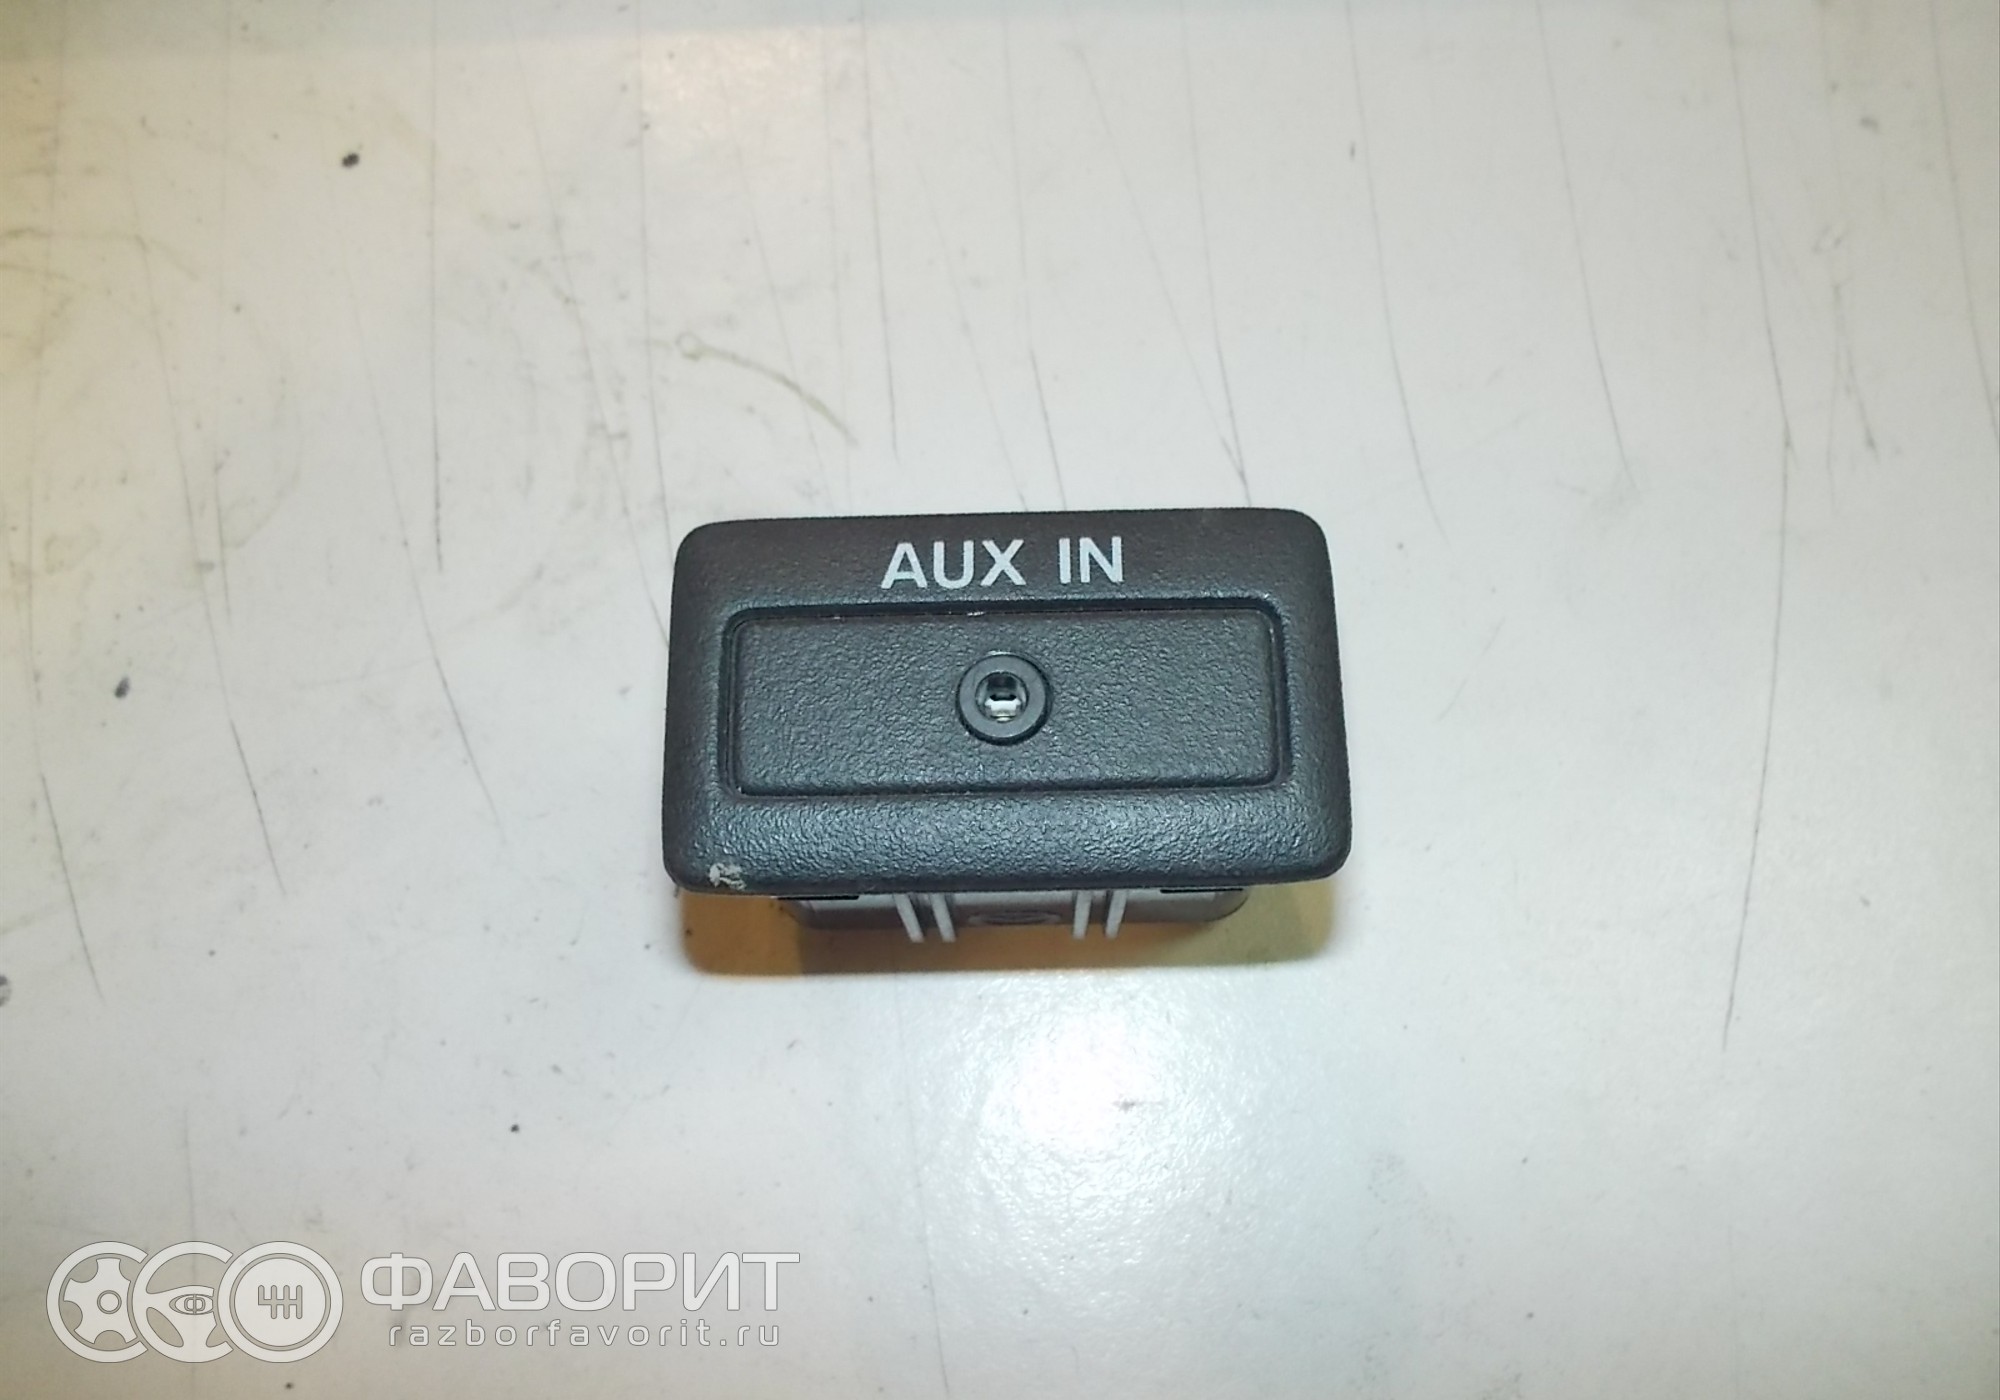 Адаптер подключения Aux-Bluetooth для Mazda в Екатеринбурге